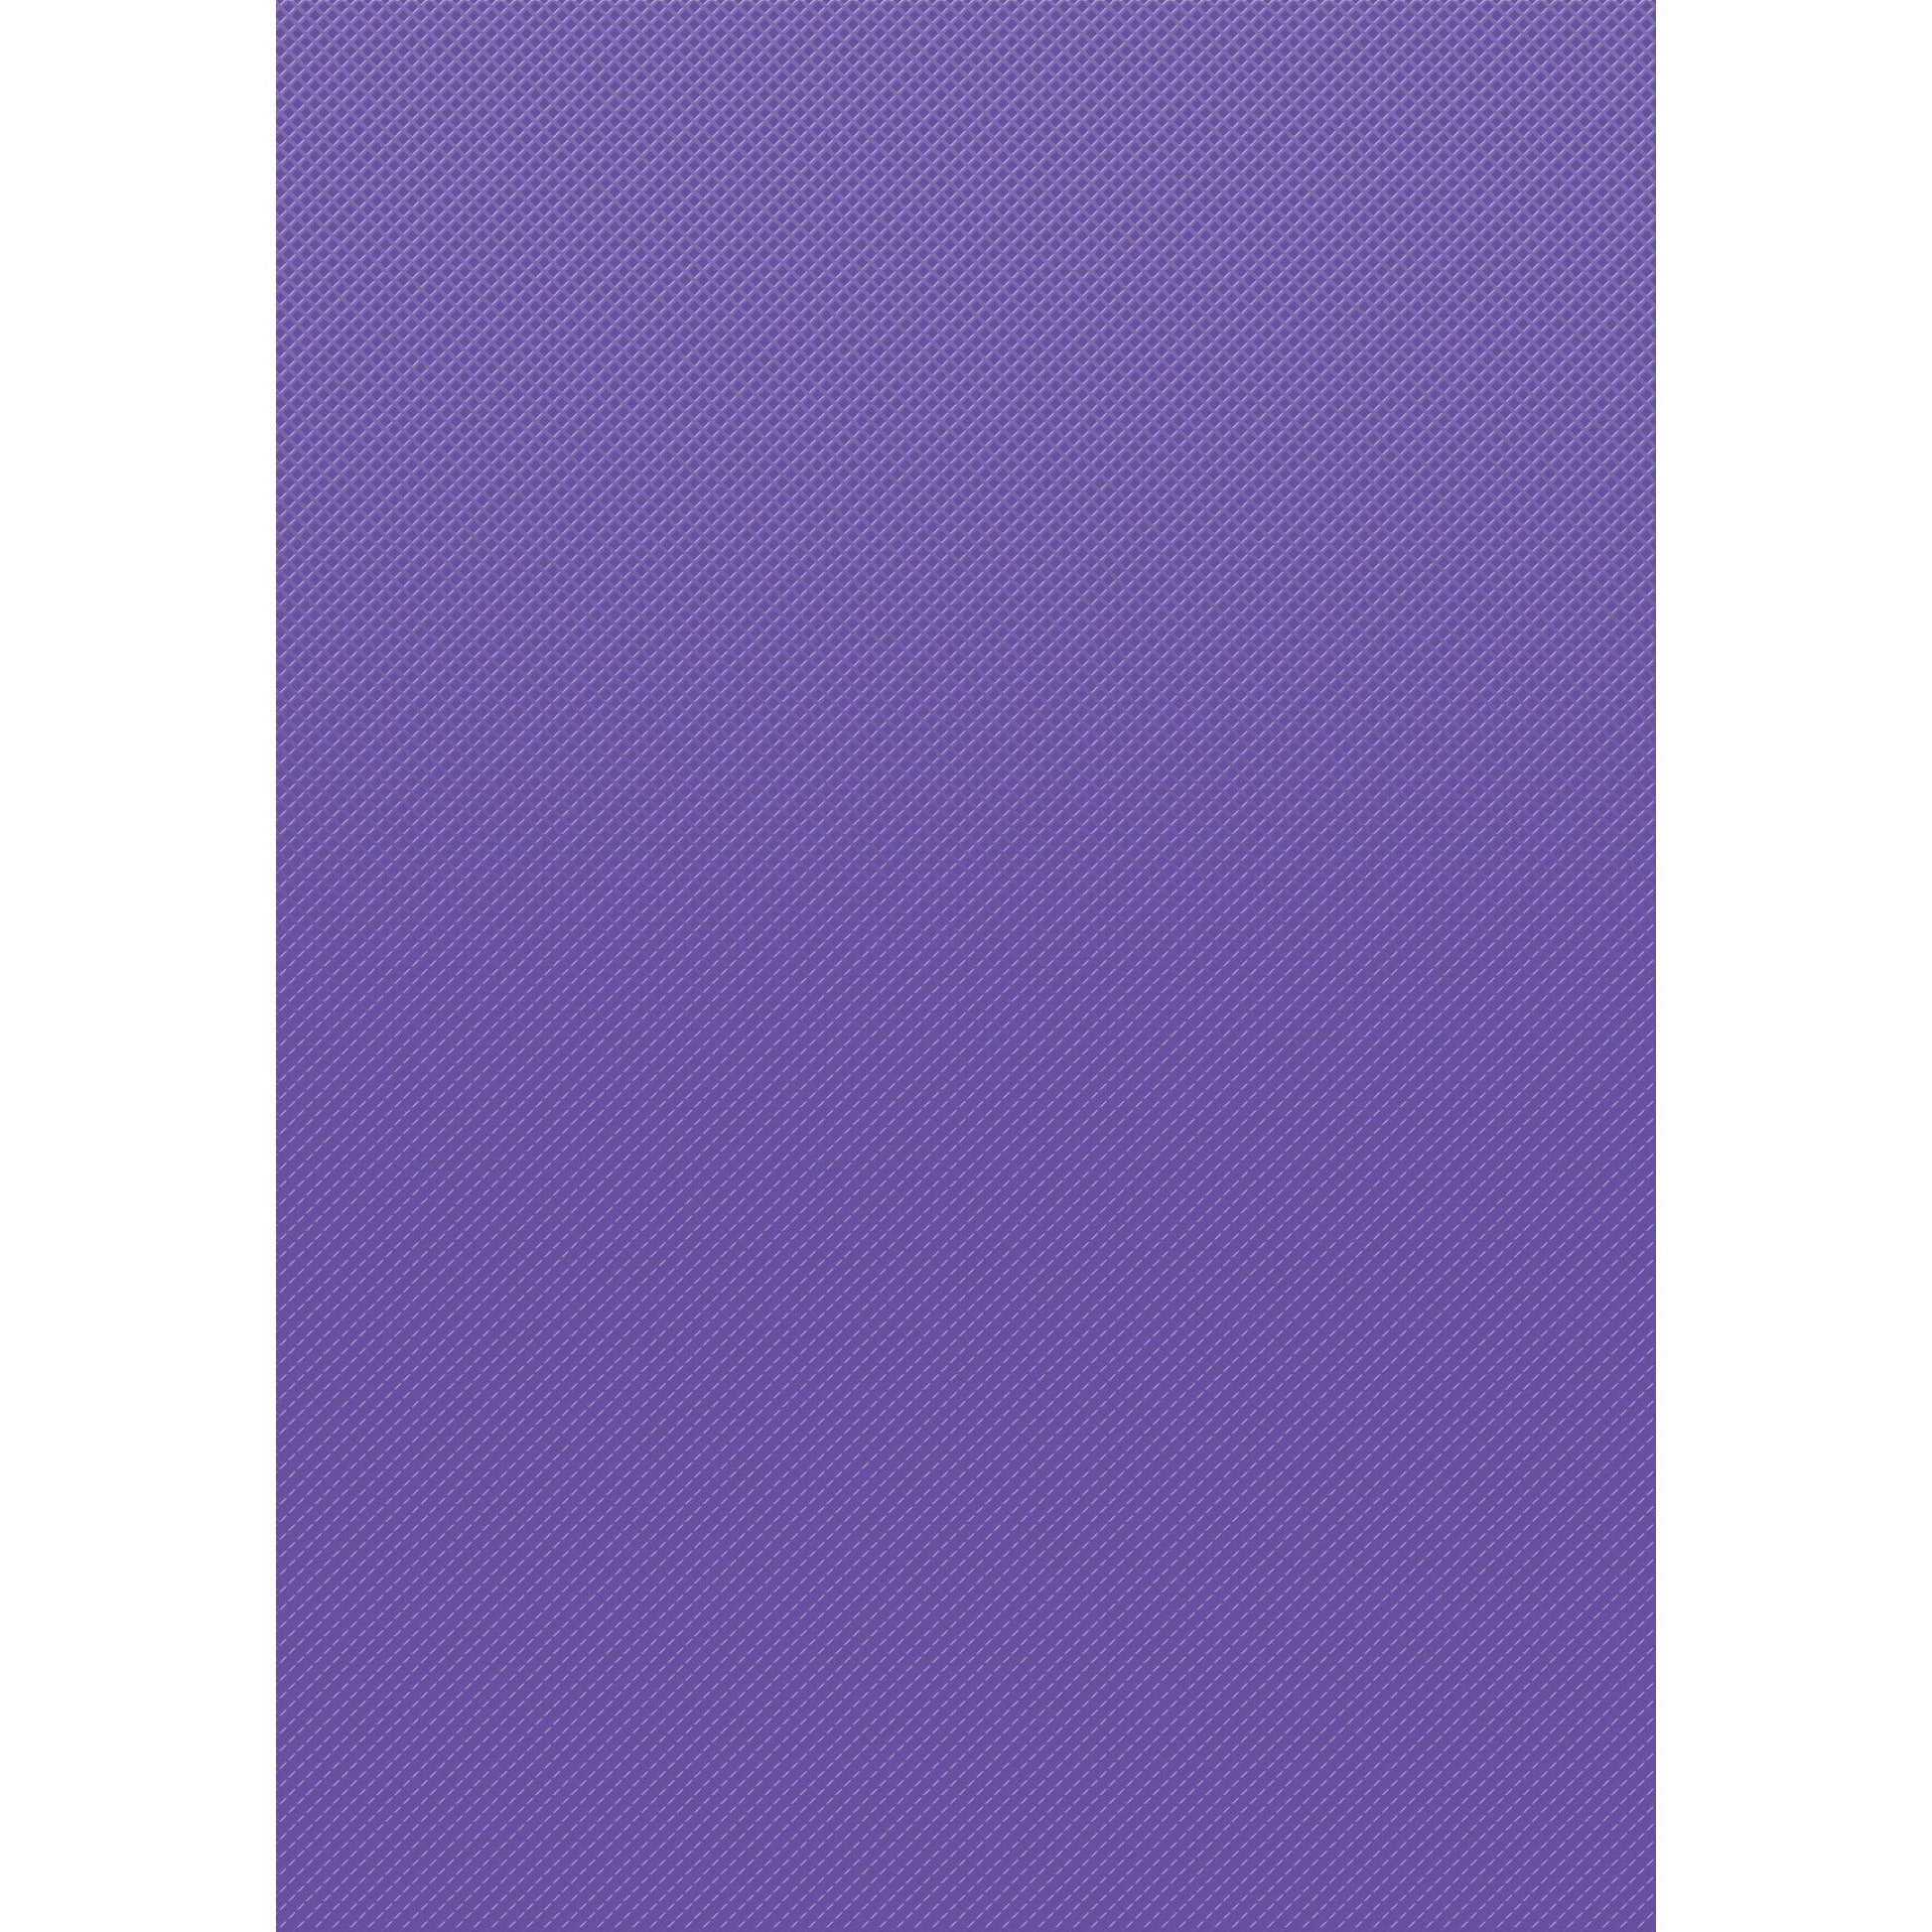 Better Than Paper® Bulletin Board Roll, 4' x 12', Ultra Purple, 4 Rolls - Loomini